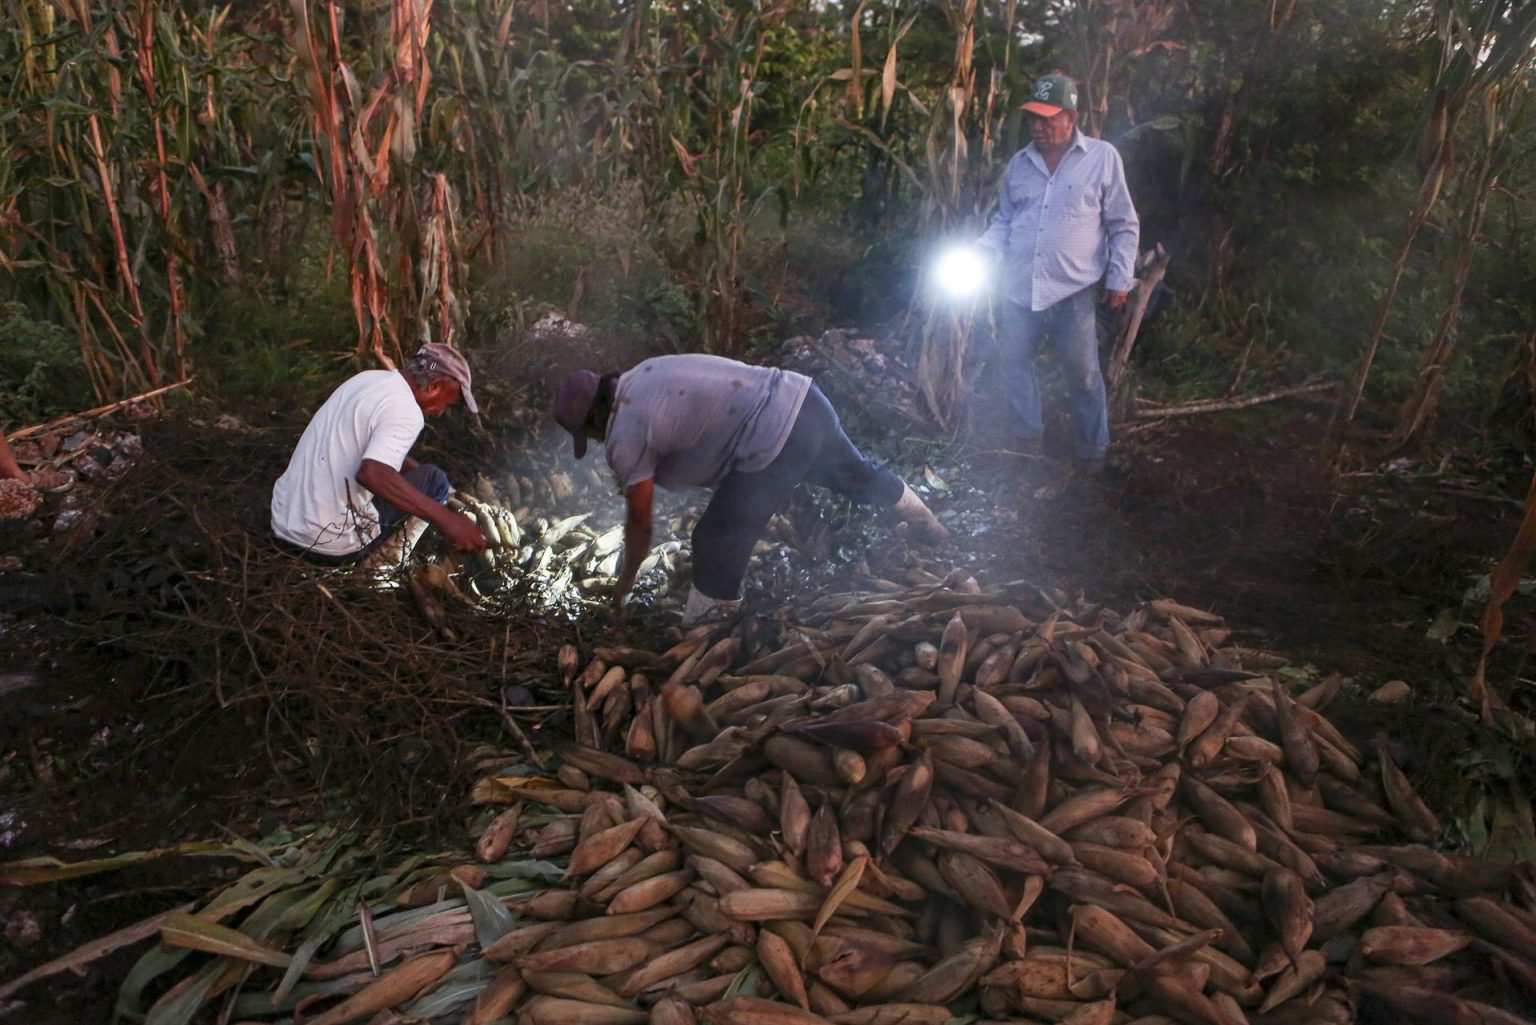 Campesinos recolectan maíz la madrugada de este sábado, en el municipio de Zoncauich, en Yucatán (México). EFE/ Lorenzo Hernández